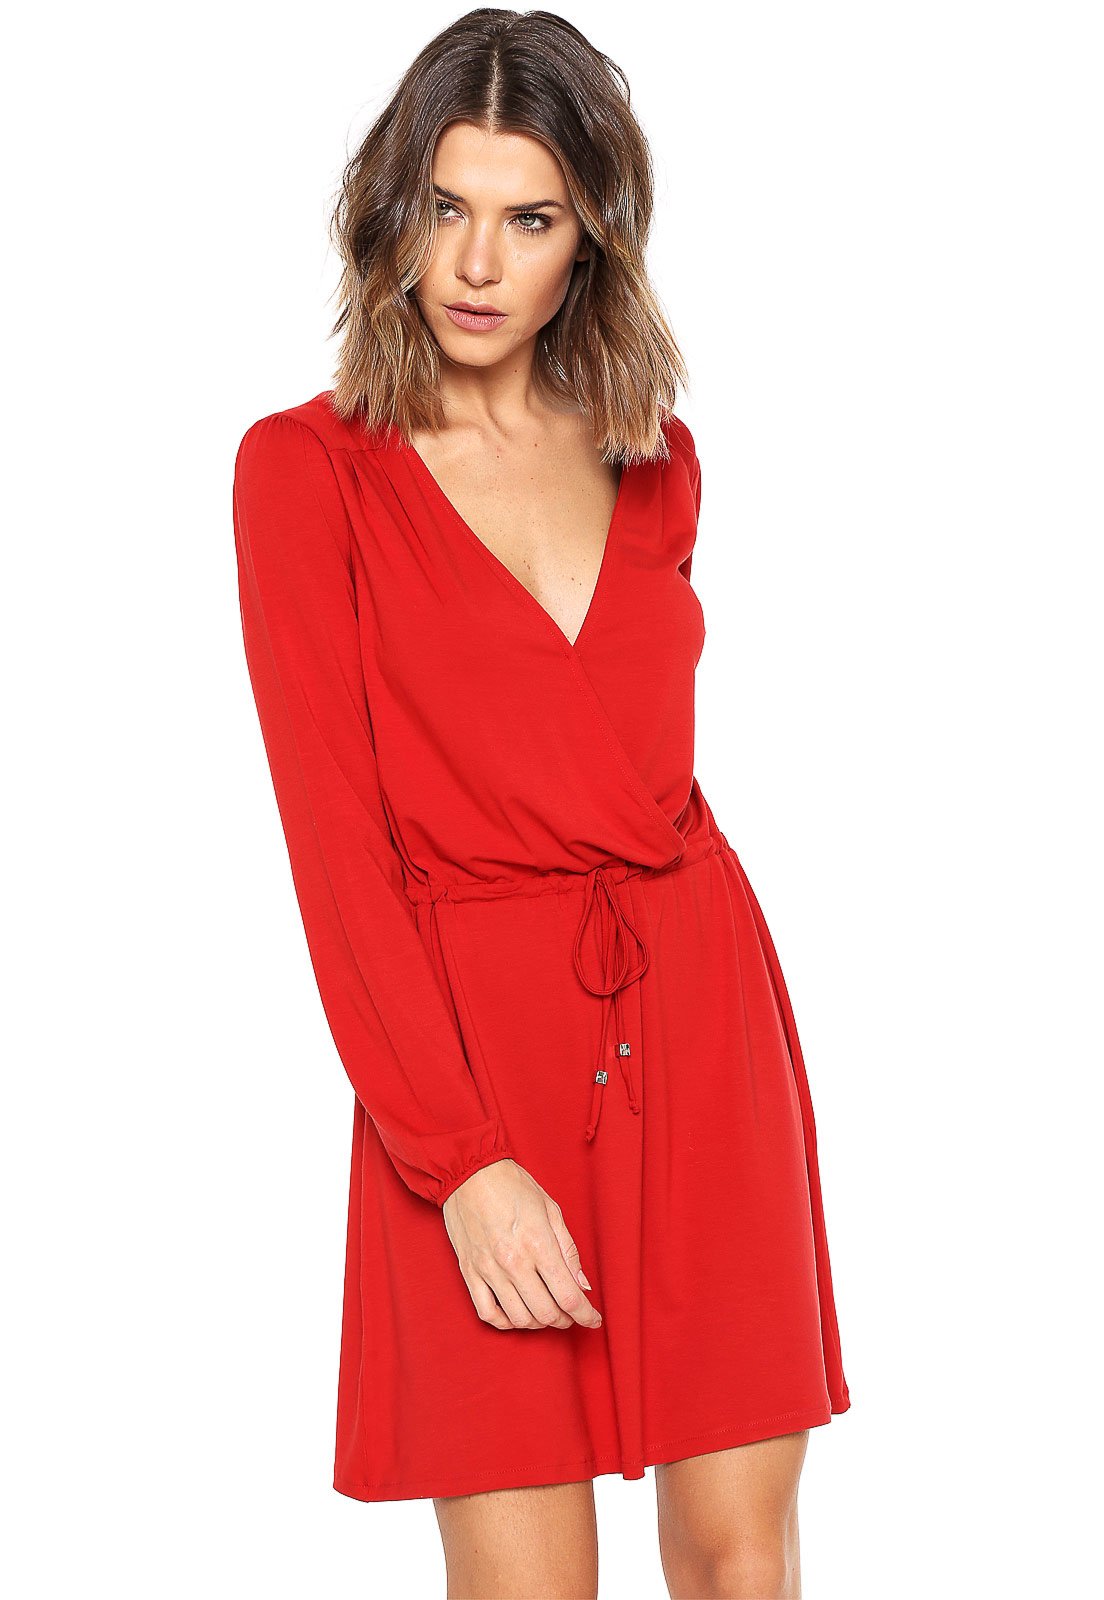 vestido vermelho transpassado